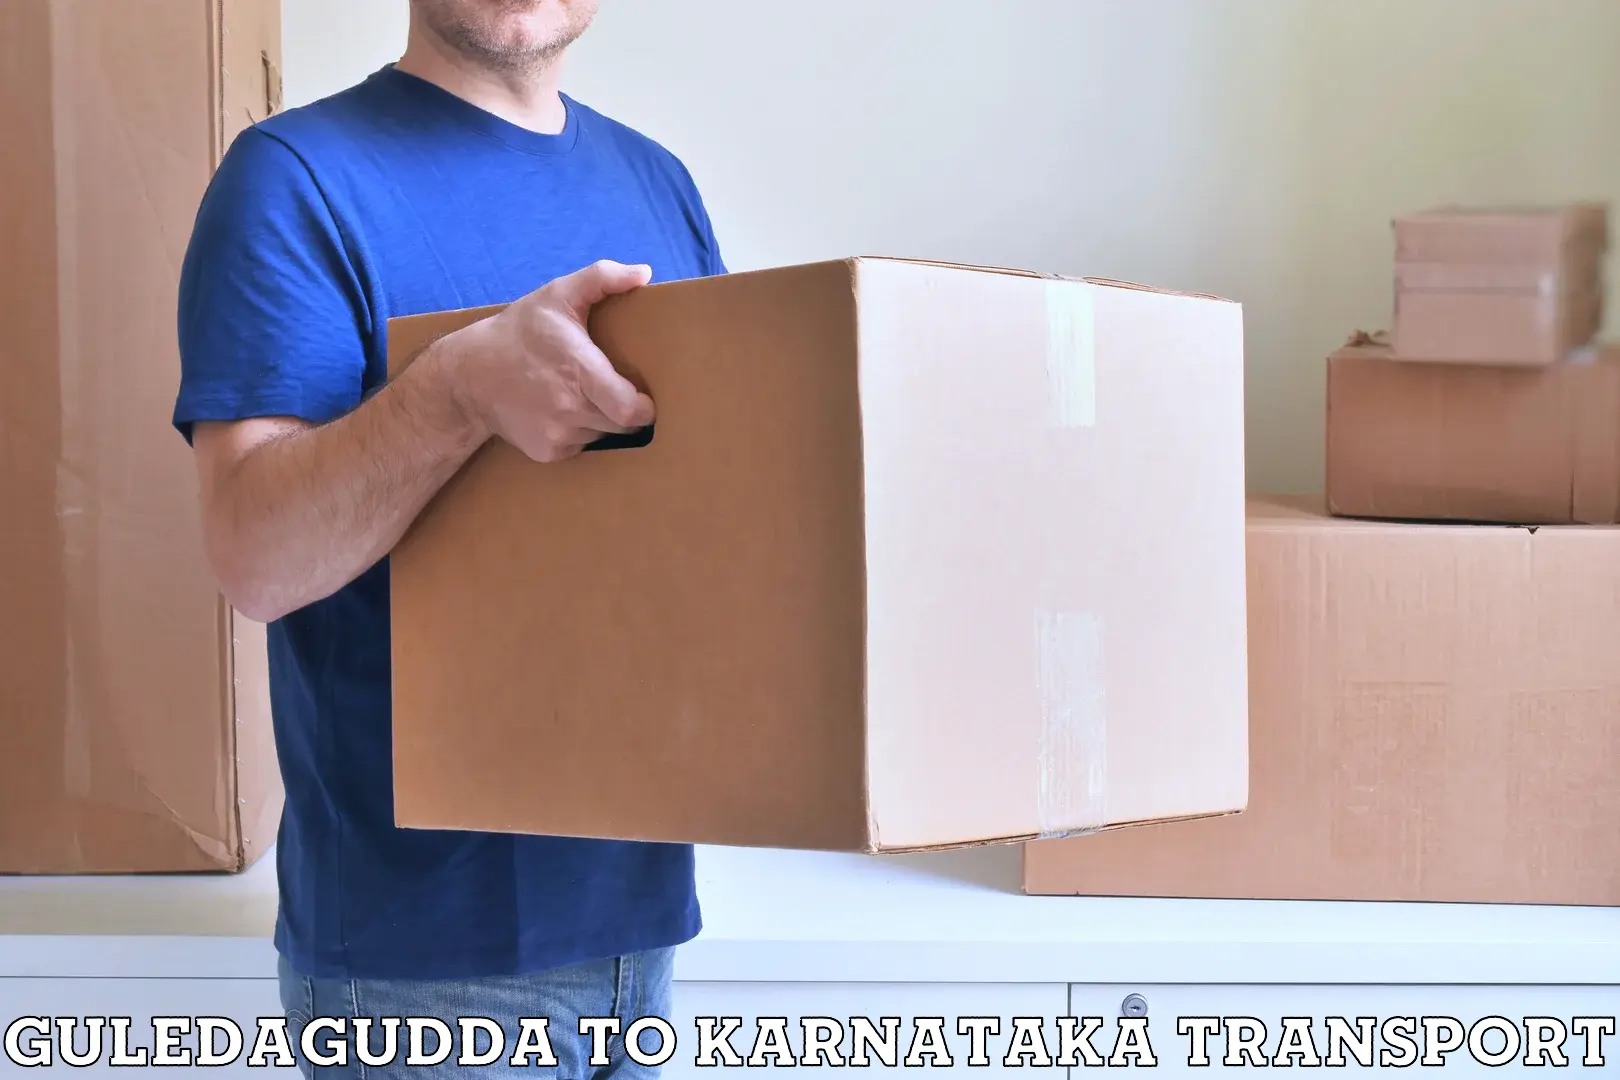 Shipping services Guledagudda to Koratagere